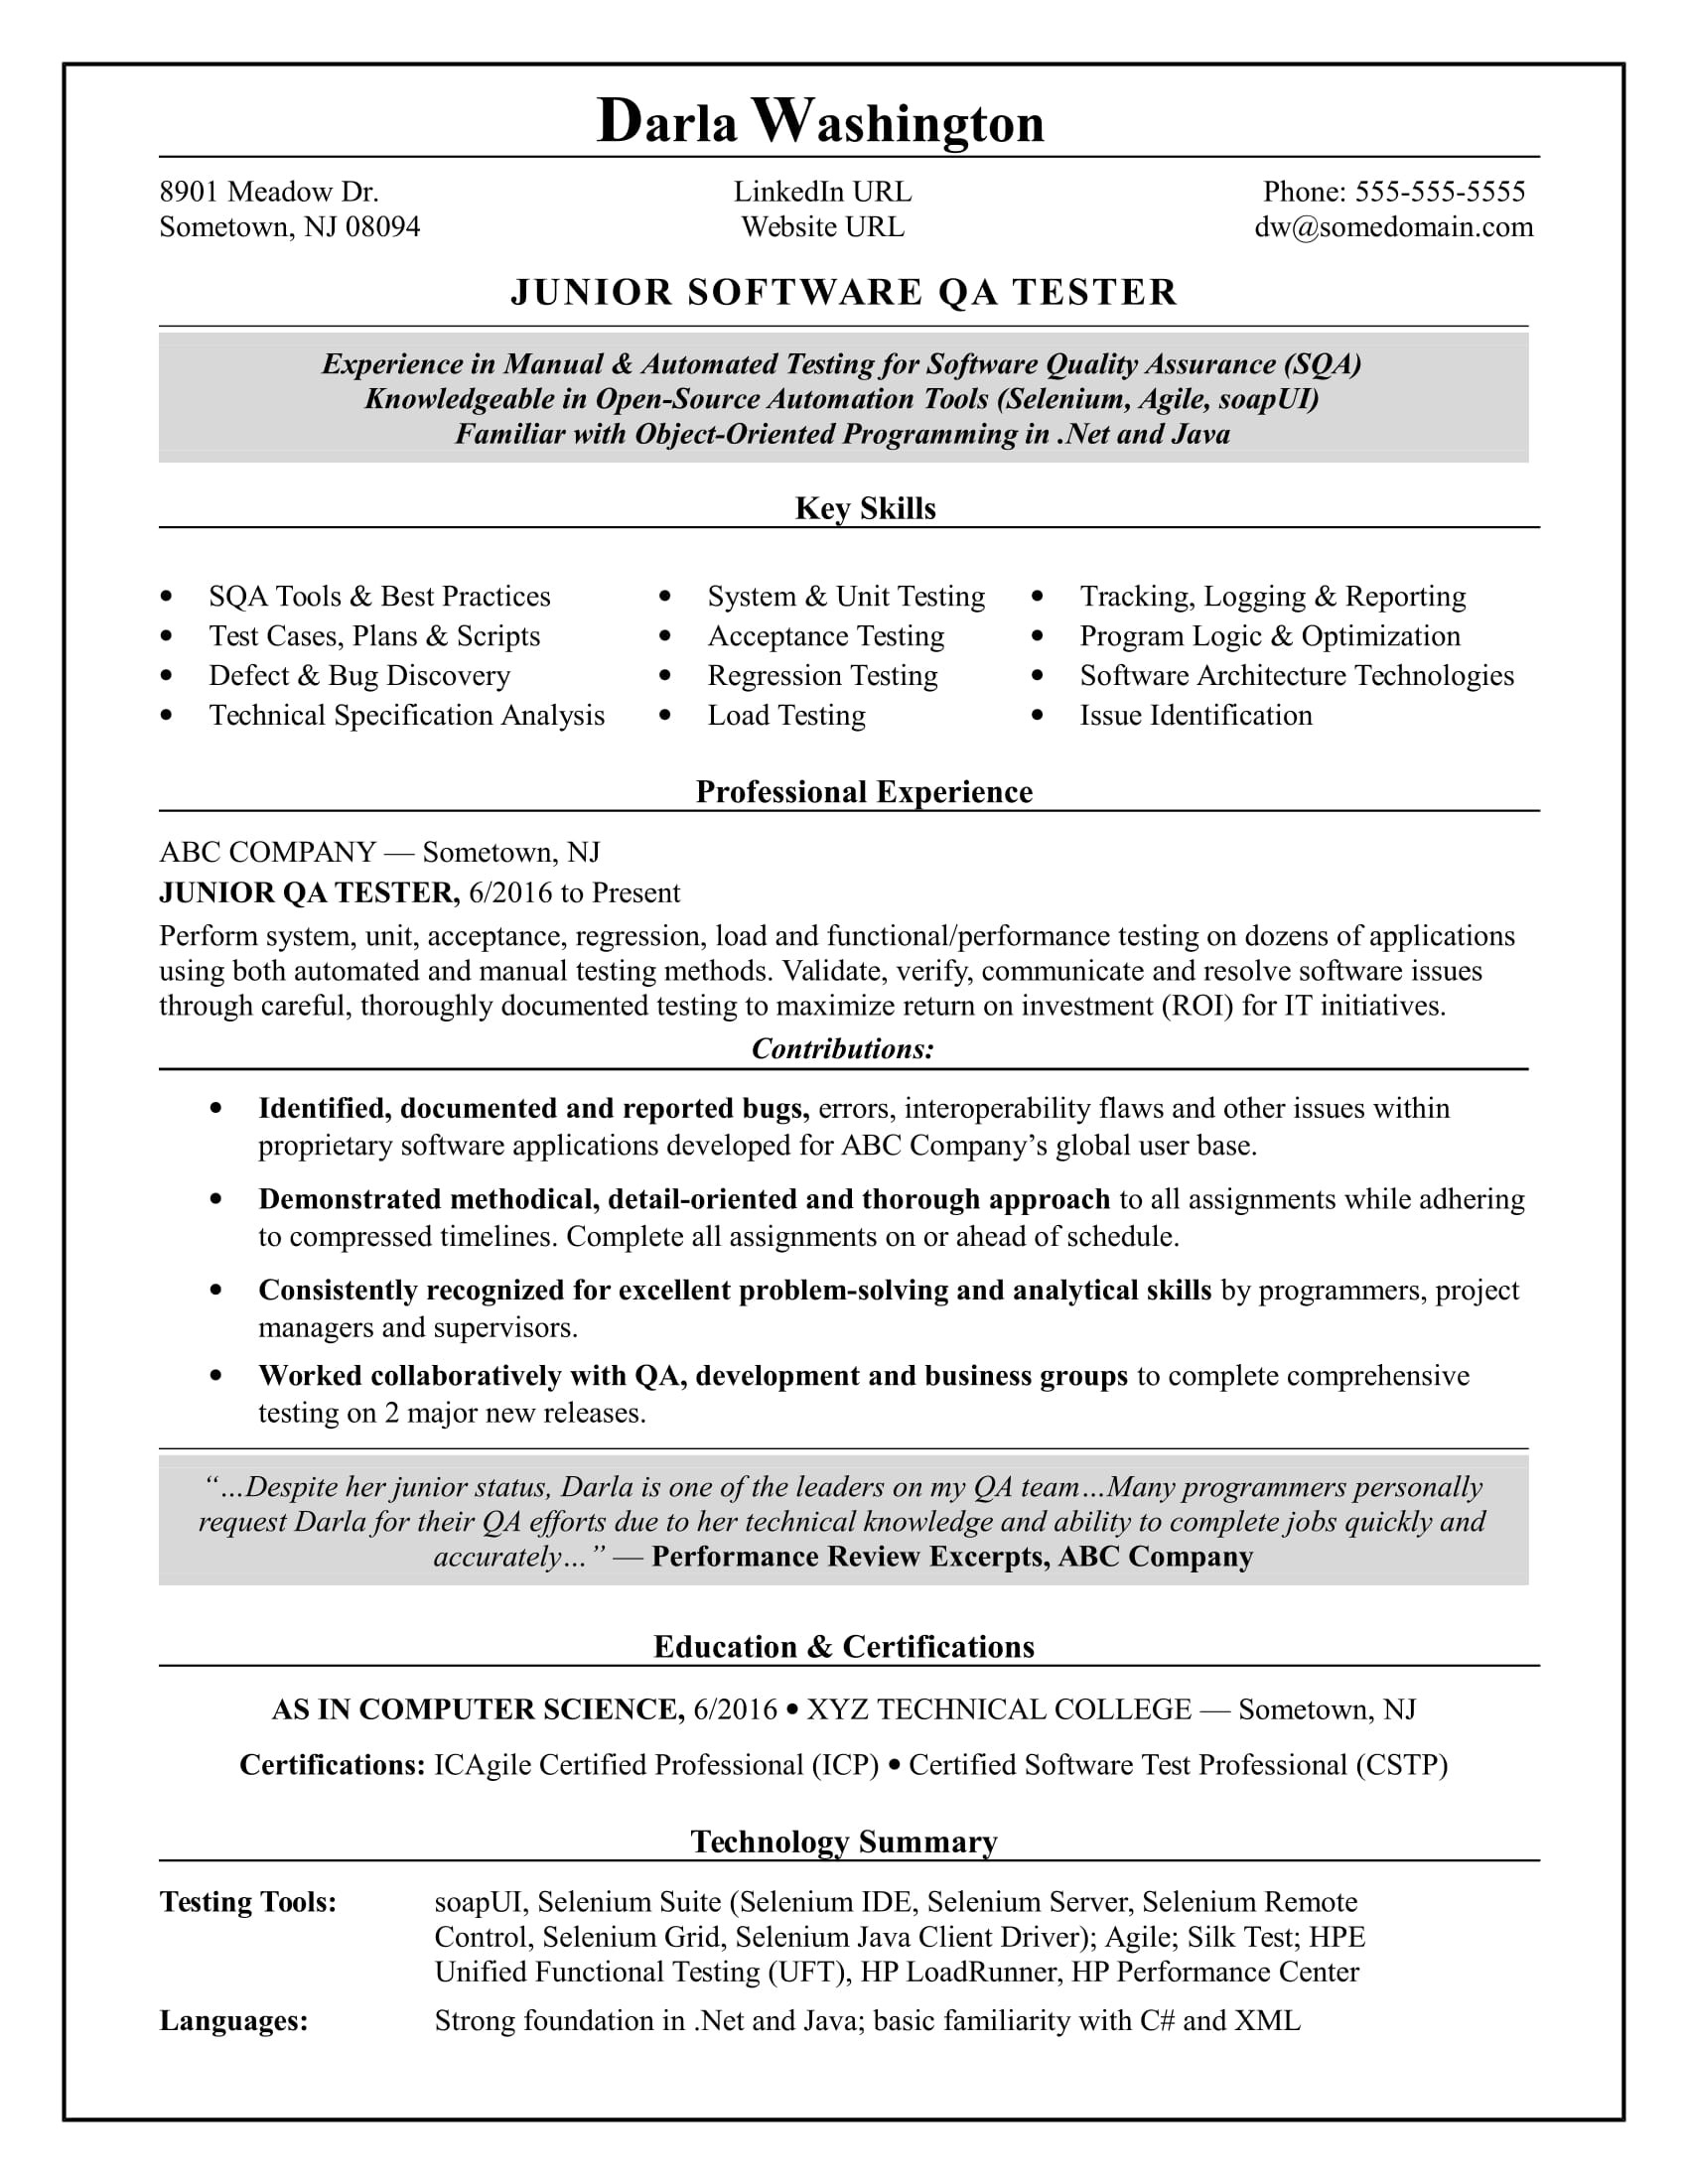 Sample Resume for Game Tester Fresher Entry-level Qa software Tester Resume Sample Monster.com